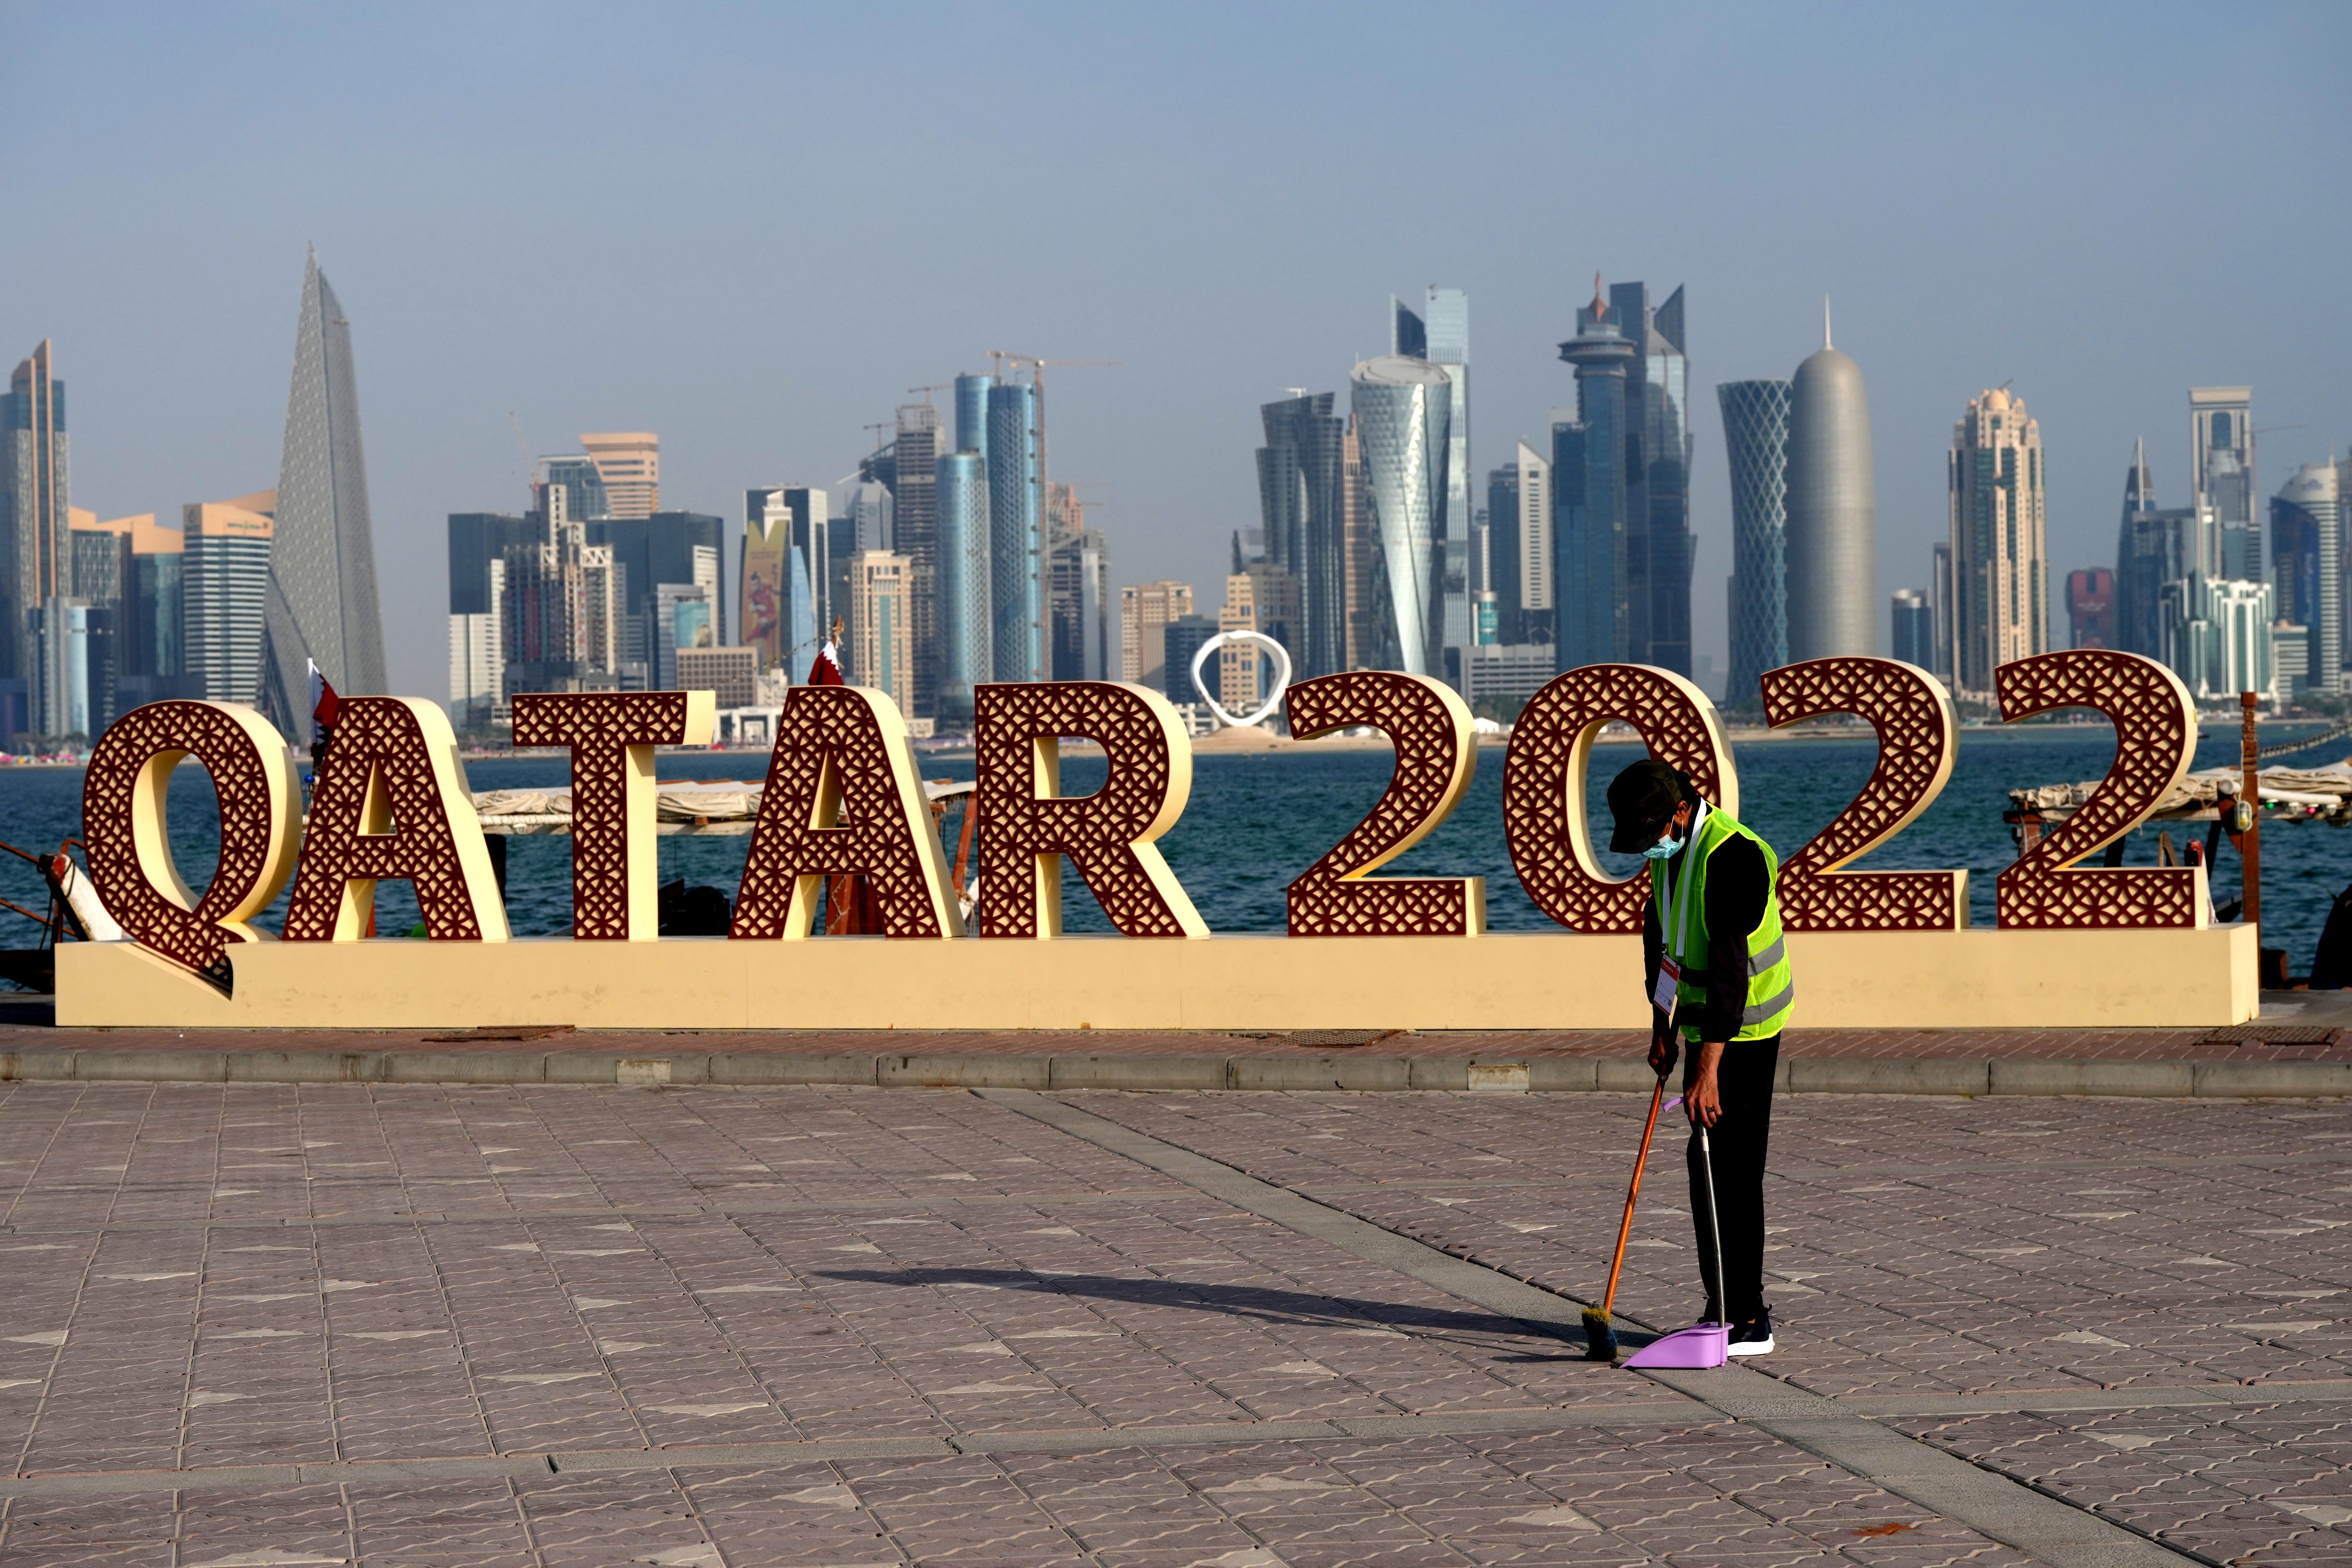 Fußball-WM in Katar